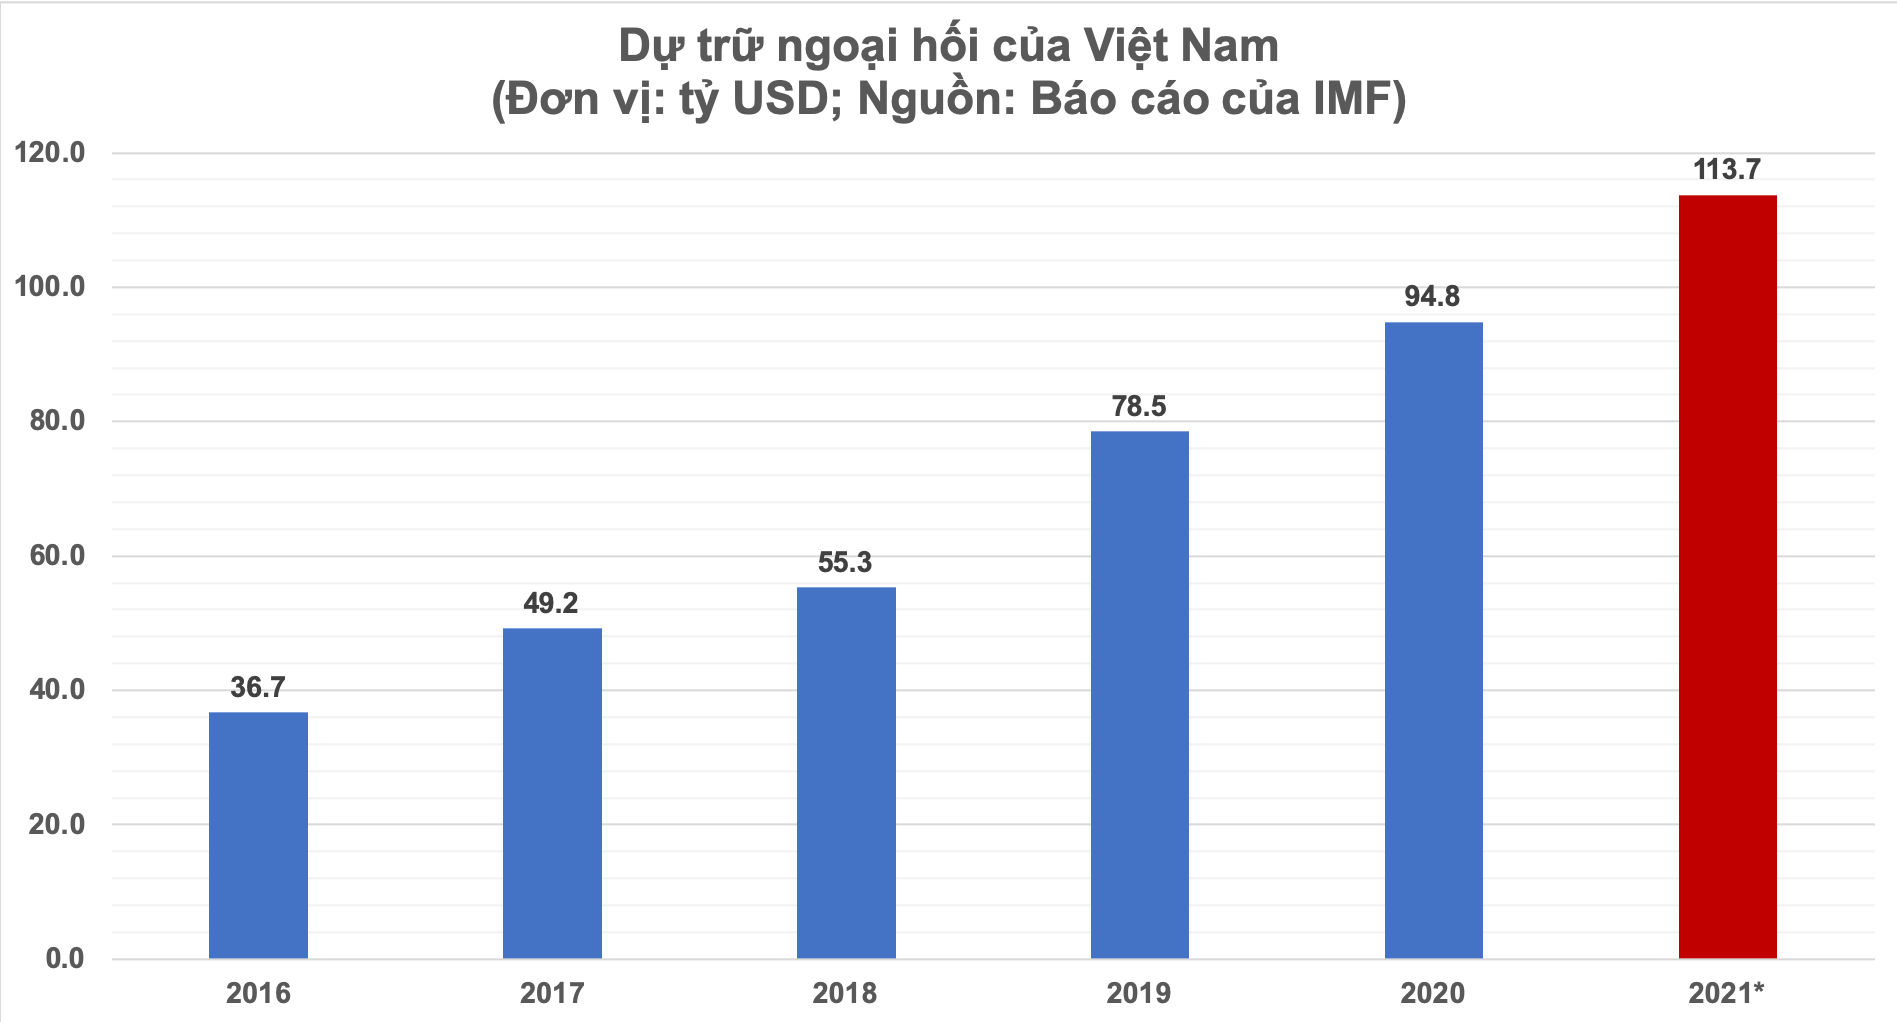 Năm 2021 dự trữ ngoại hối Việt Nam dự báo đạt 113,7 tỷ USD